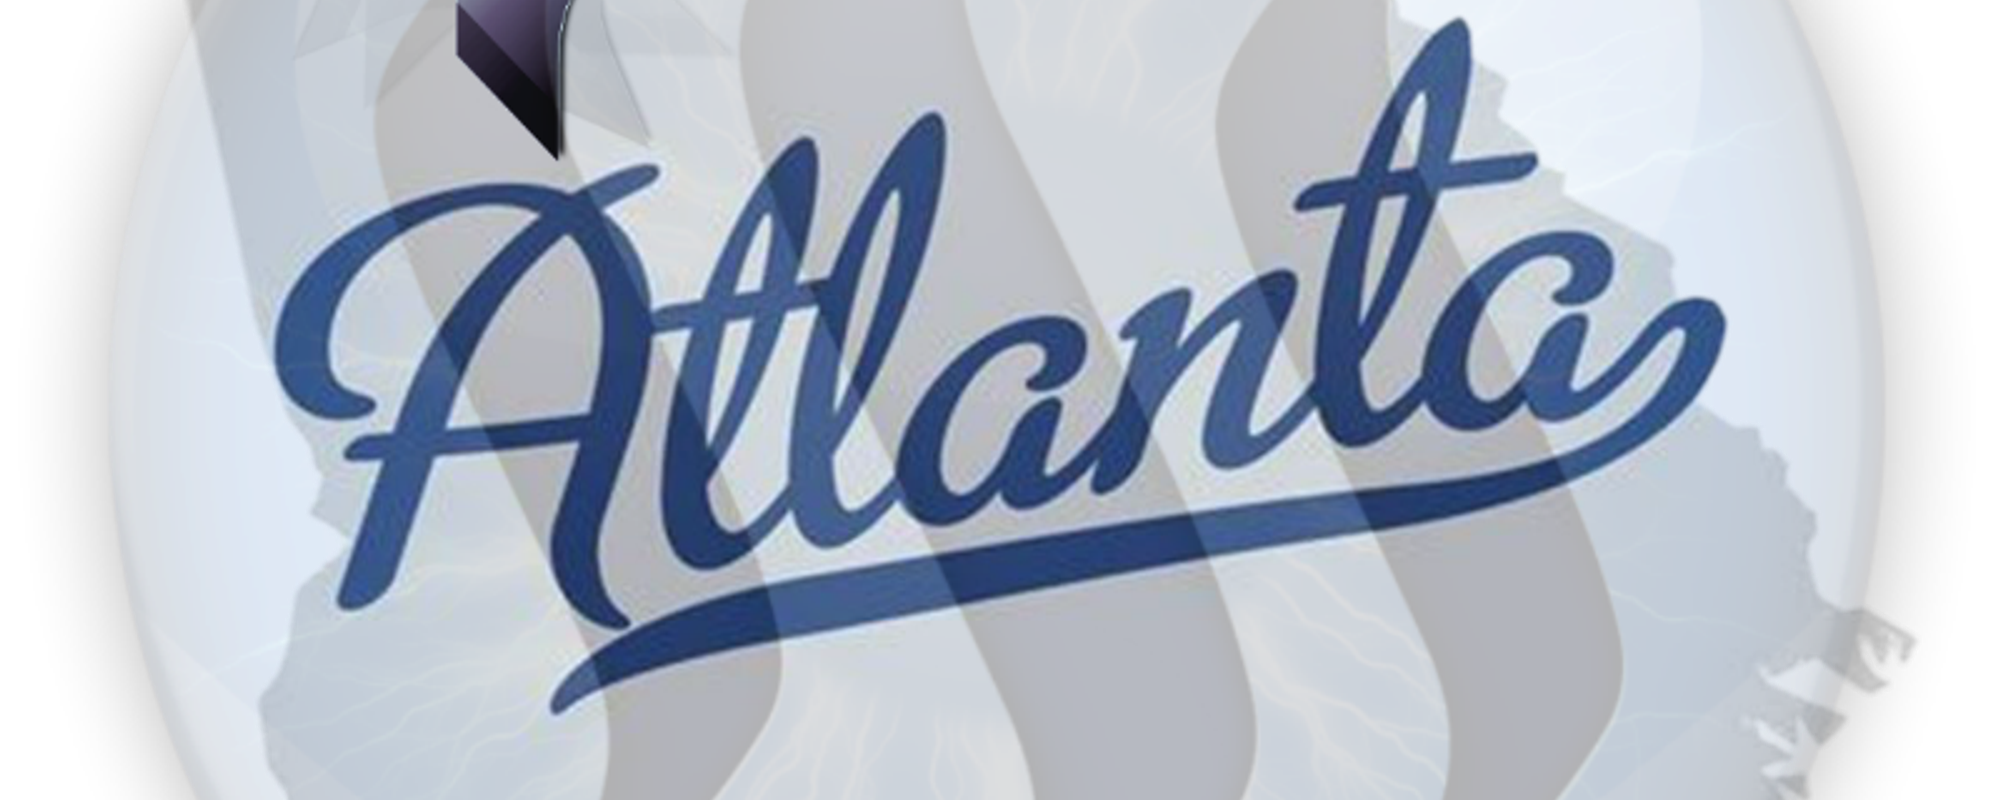 The Alliance in Atlanta